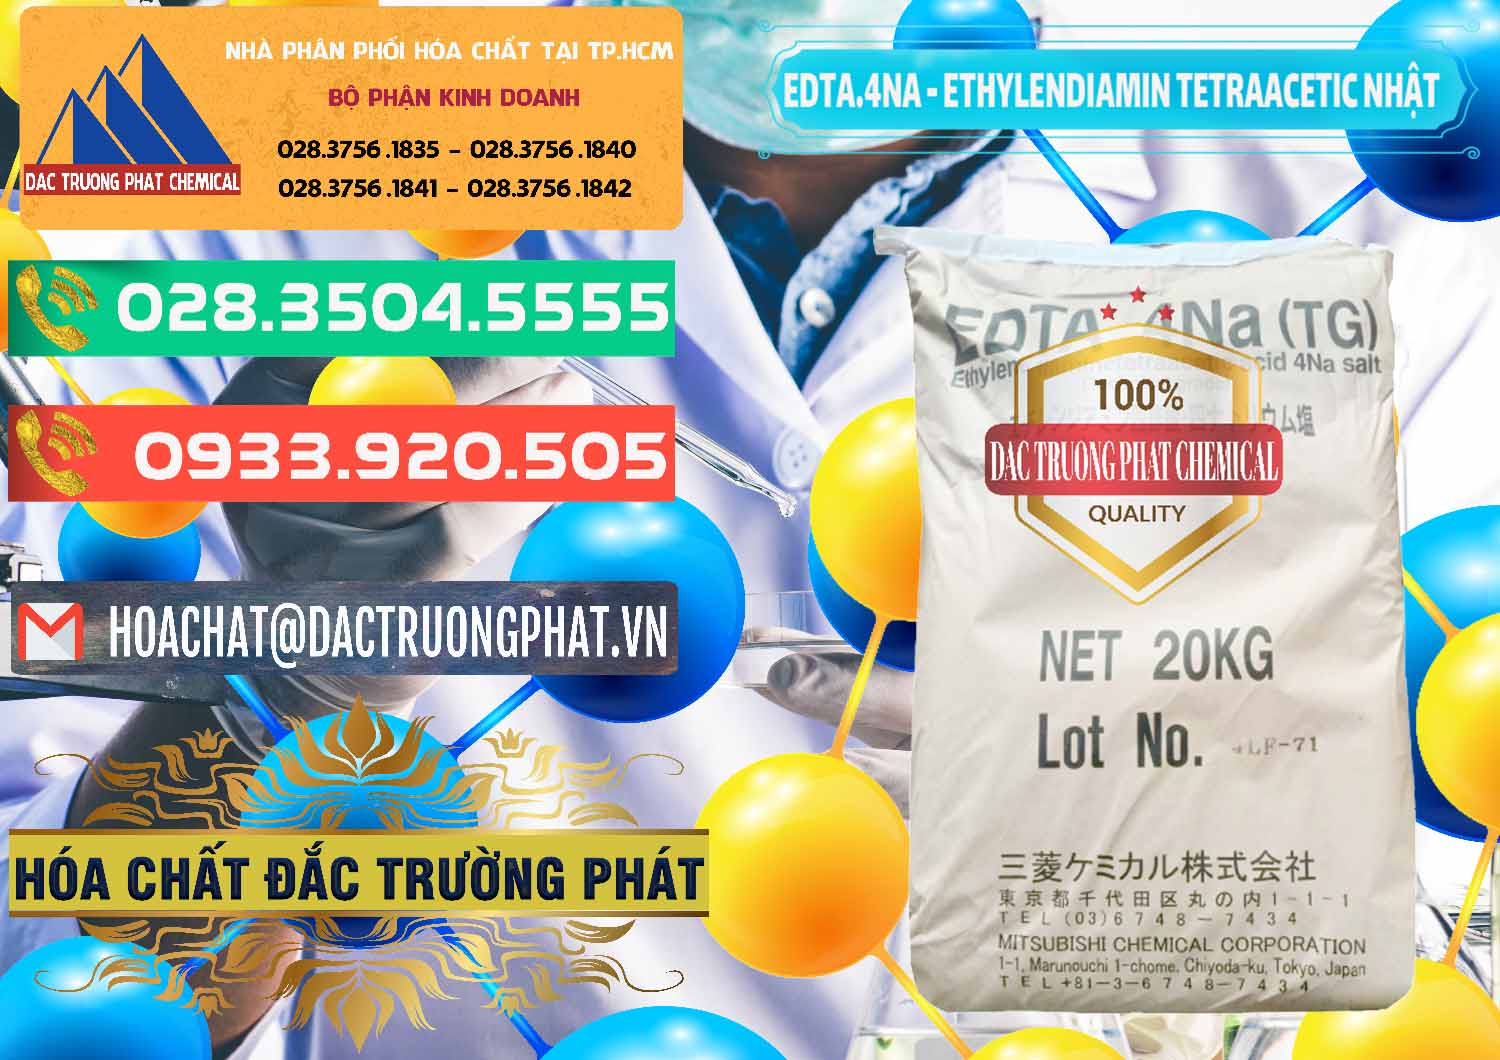 Công ty kinh doanh - bán EDTA 4Na - Ethylendiamin Tetraacetic Nhật Bản Japan - 0482 - Chuyên phân phối _ cung cấp hóa chất tại TP.HCM - congtyhoachat.com.vn